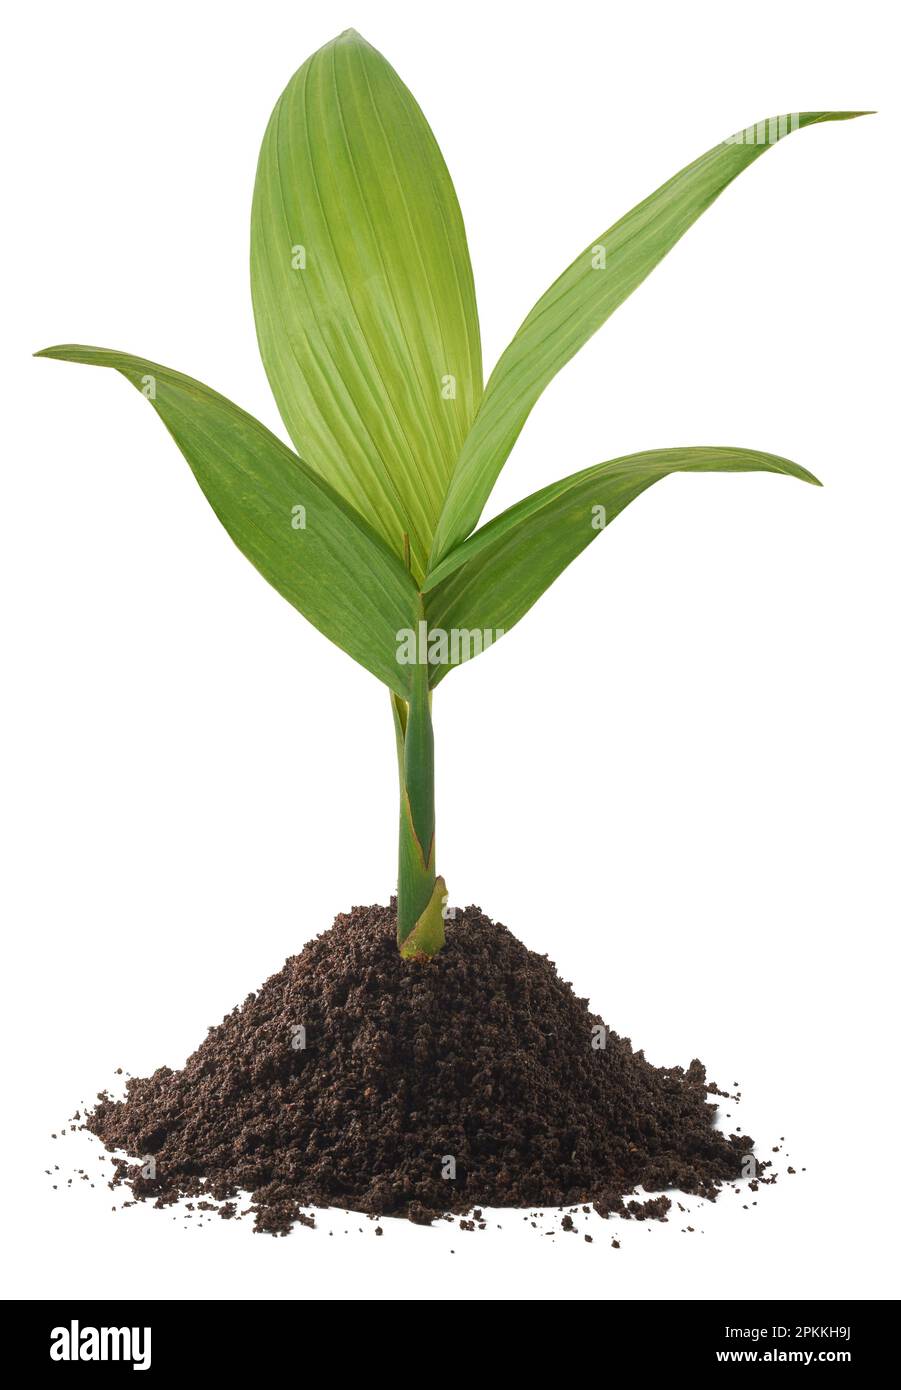 growing young areca nut plant isolated on white background, aka areca palm, areca nut palm, betel palm, betel nut palm or indian nut Stock Photo